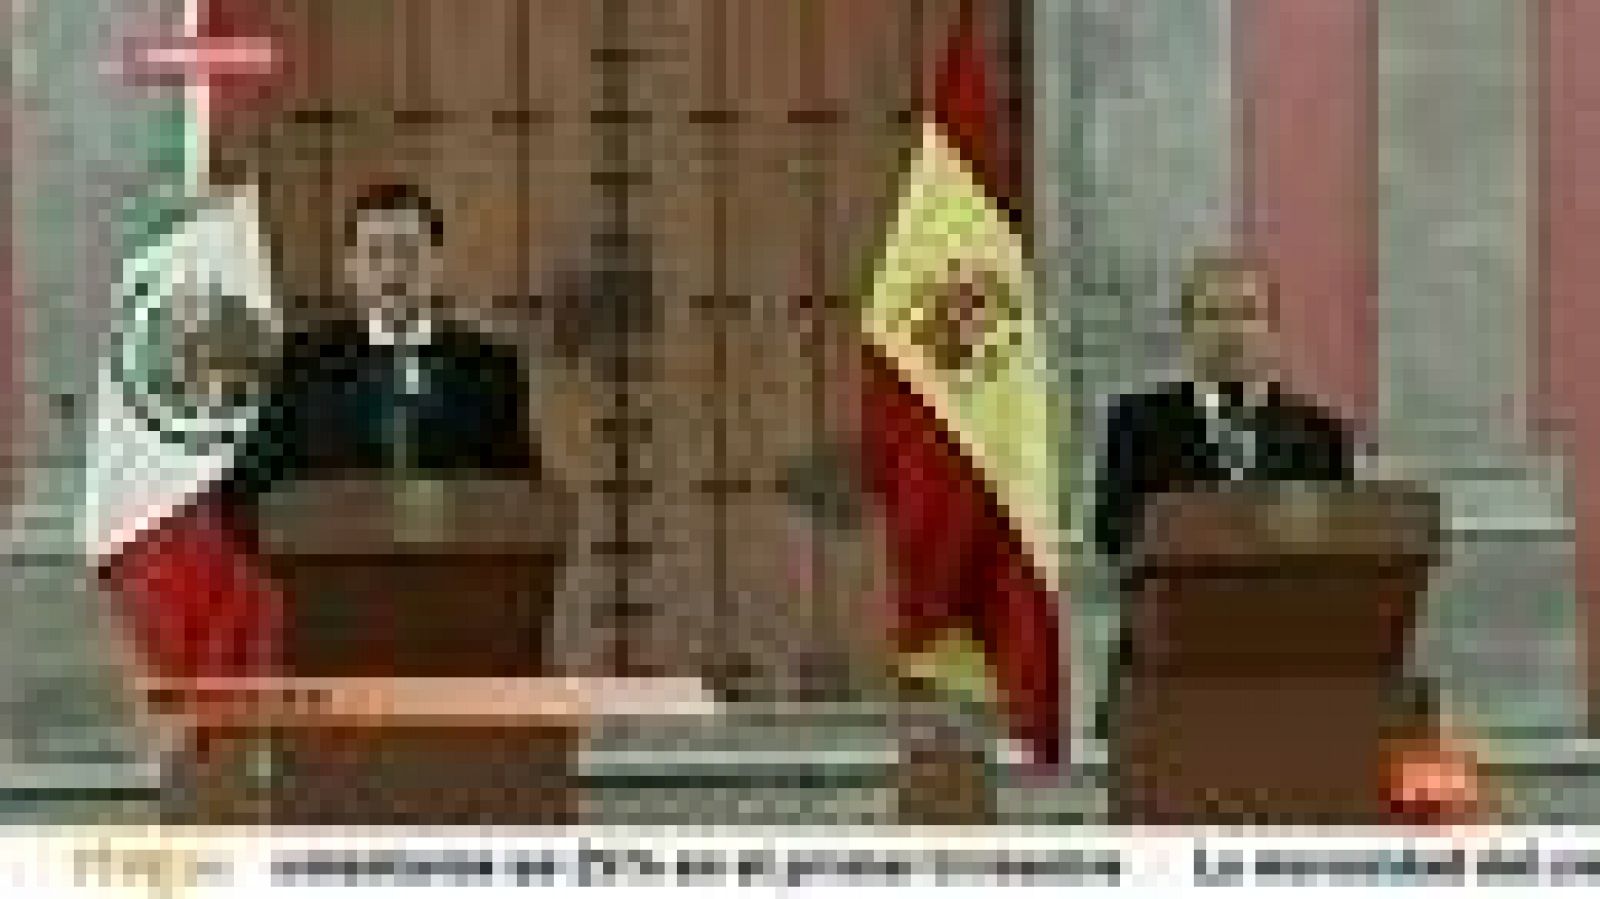  El presidente del Gobierno, Mariano Rajoy, ha defendido el papel del Rey Juan Carlos como ¿el mejor embajador¿ de la comunidad de países iberoamericanos sin hacer una mención a la disculpa que ha realizado el Don Juan Carlos este miércoles